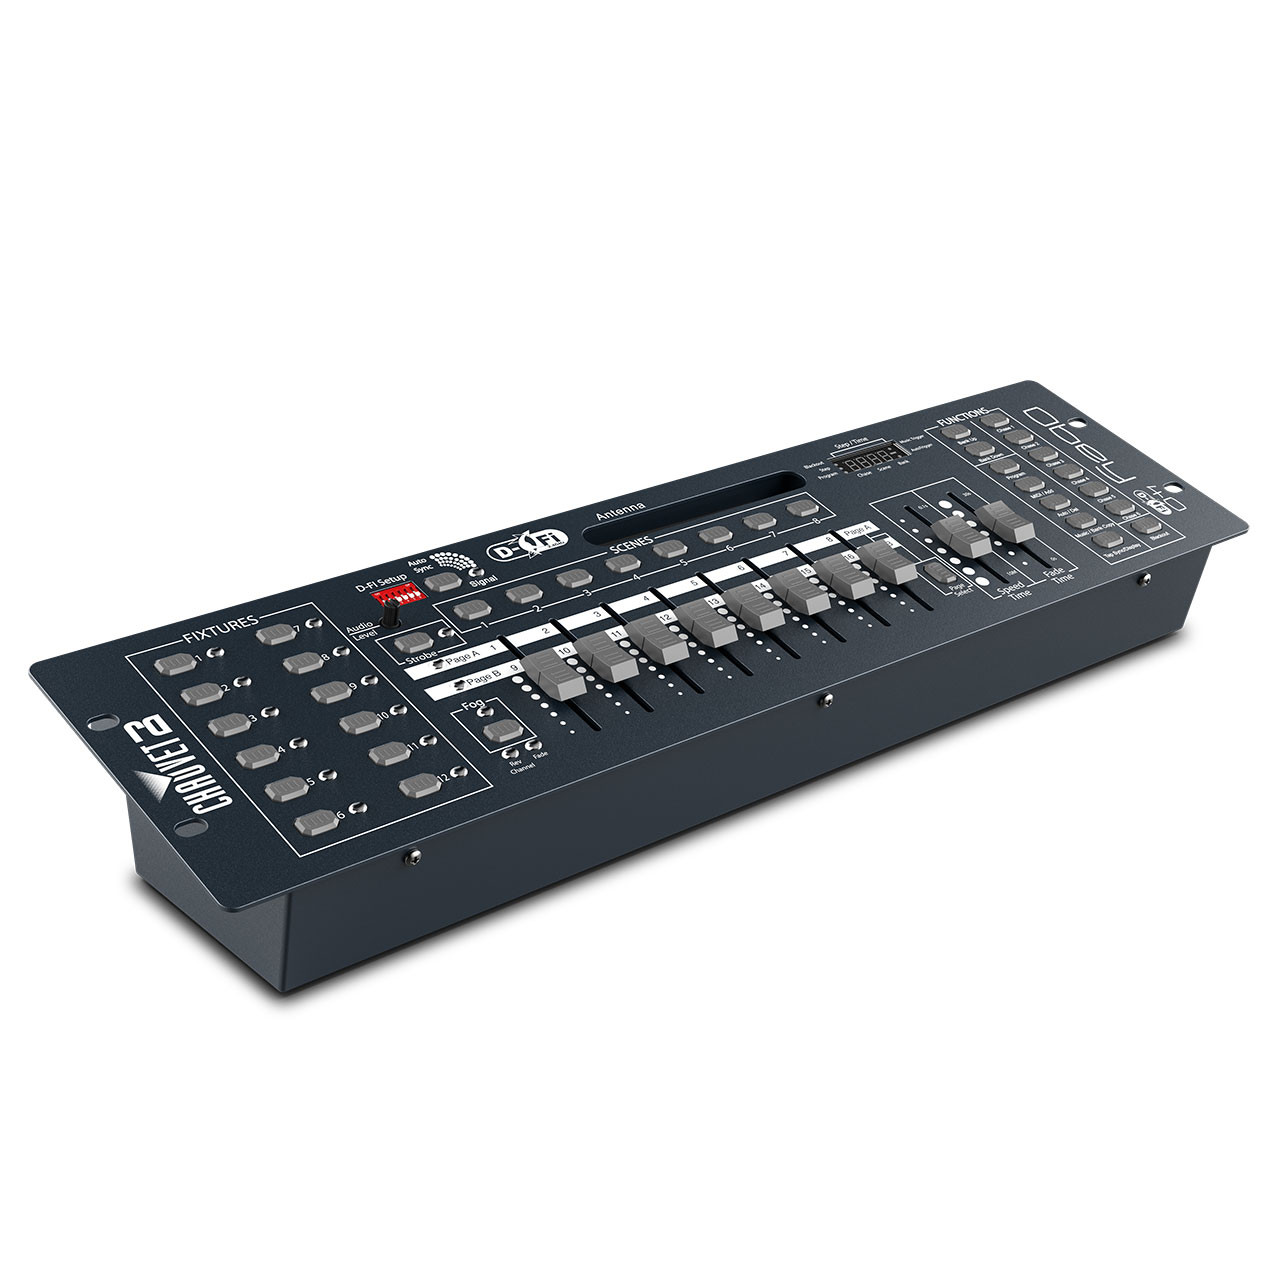 Chauvet DJ Obey 40 Universal DMX-512 Controller w/ DMX Cable